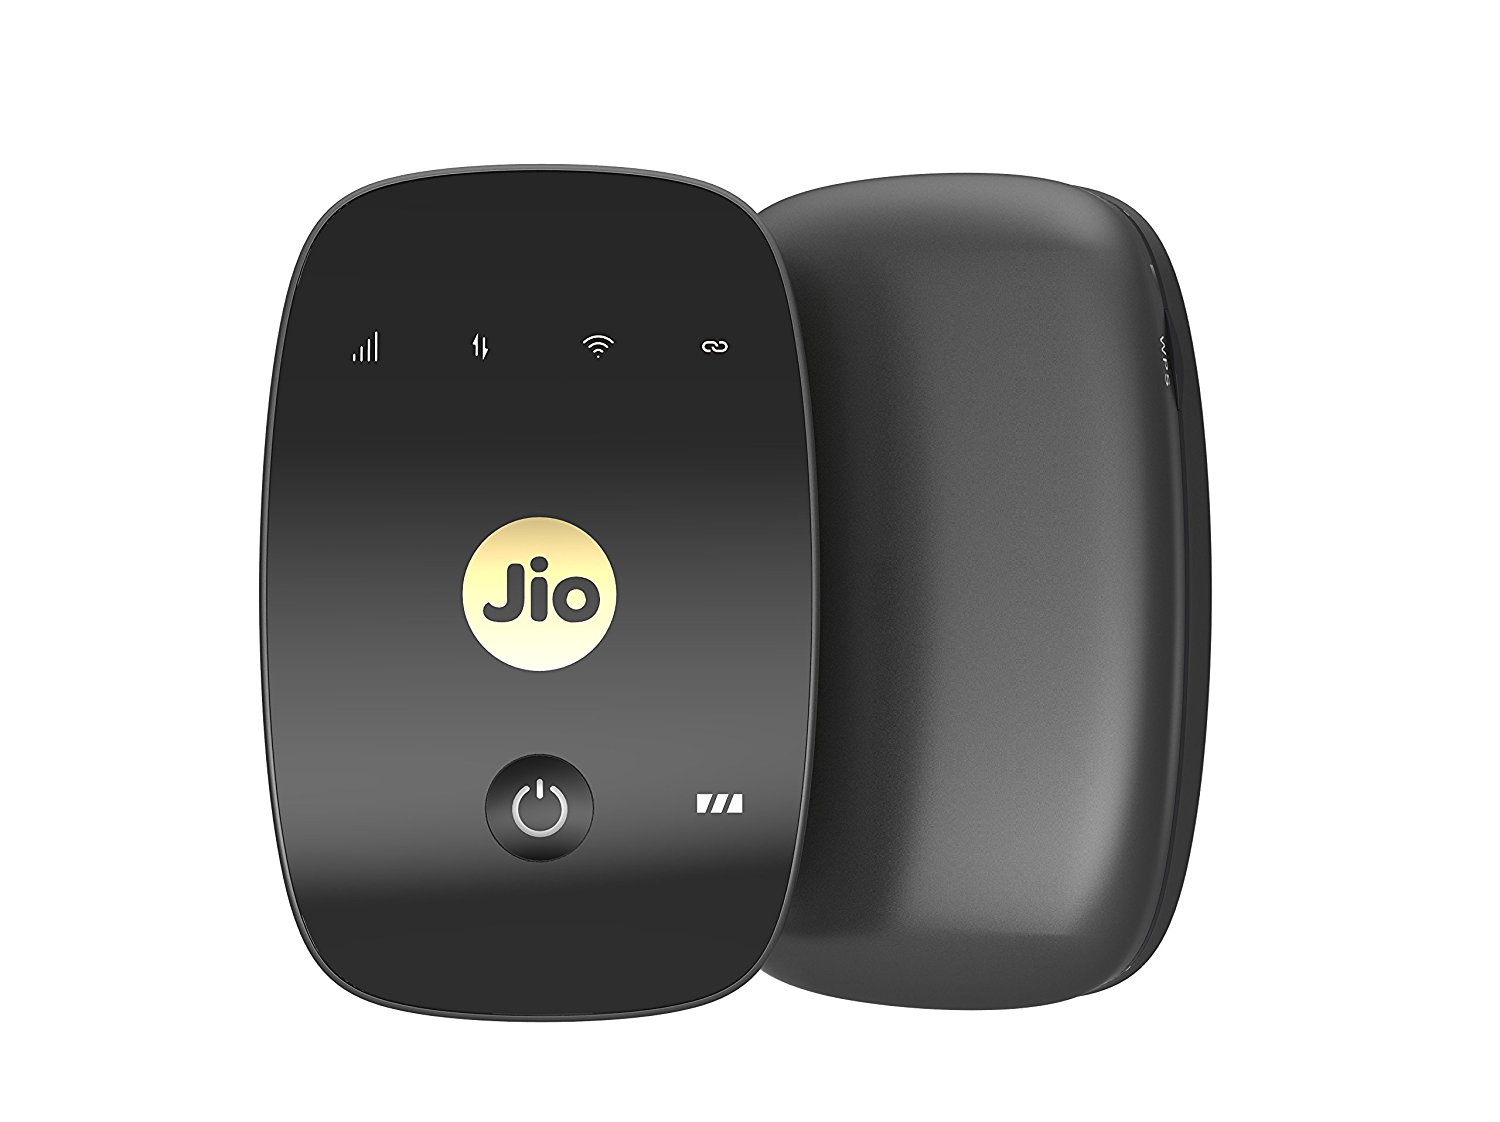 JioFi M2S 150Mbps Wireless 4G Portable Data + Voice Device